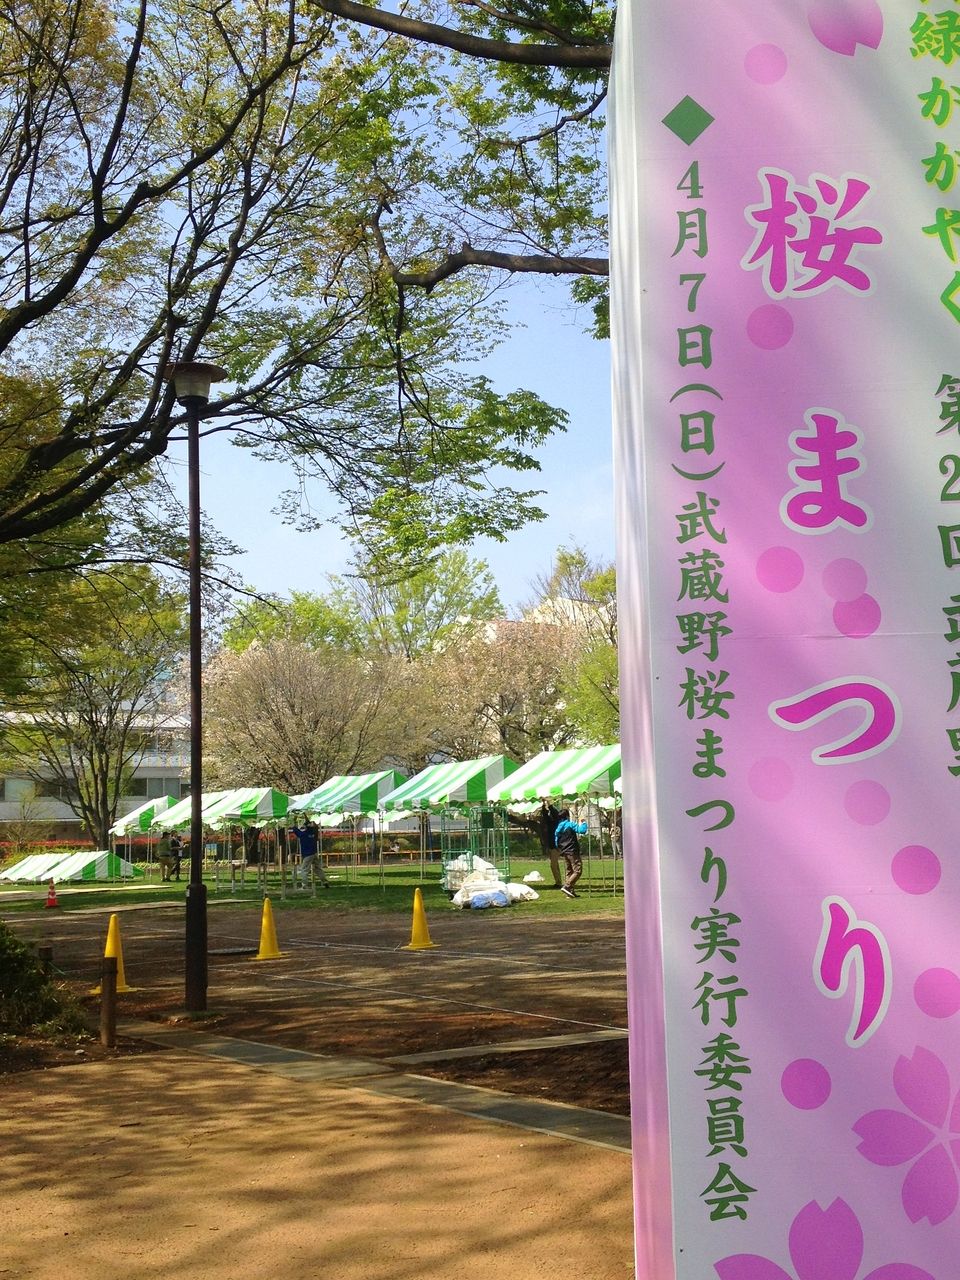 武蔵野市のむさしの桜まつり